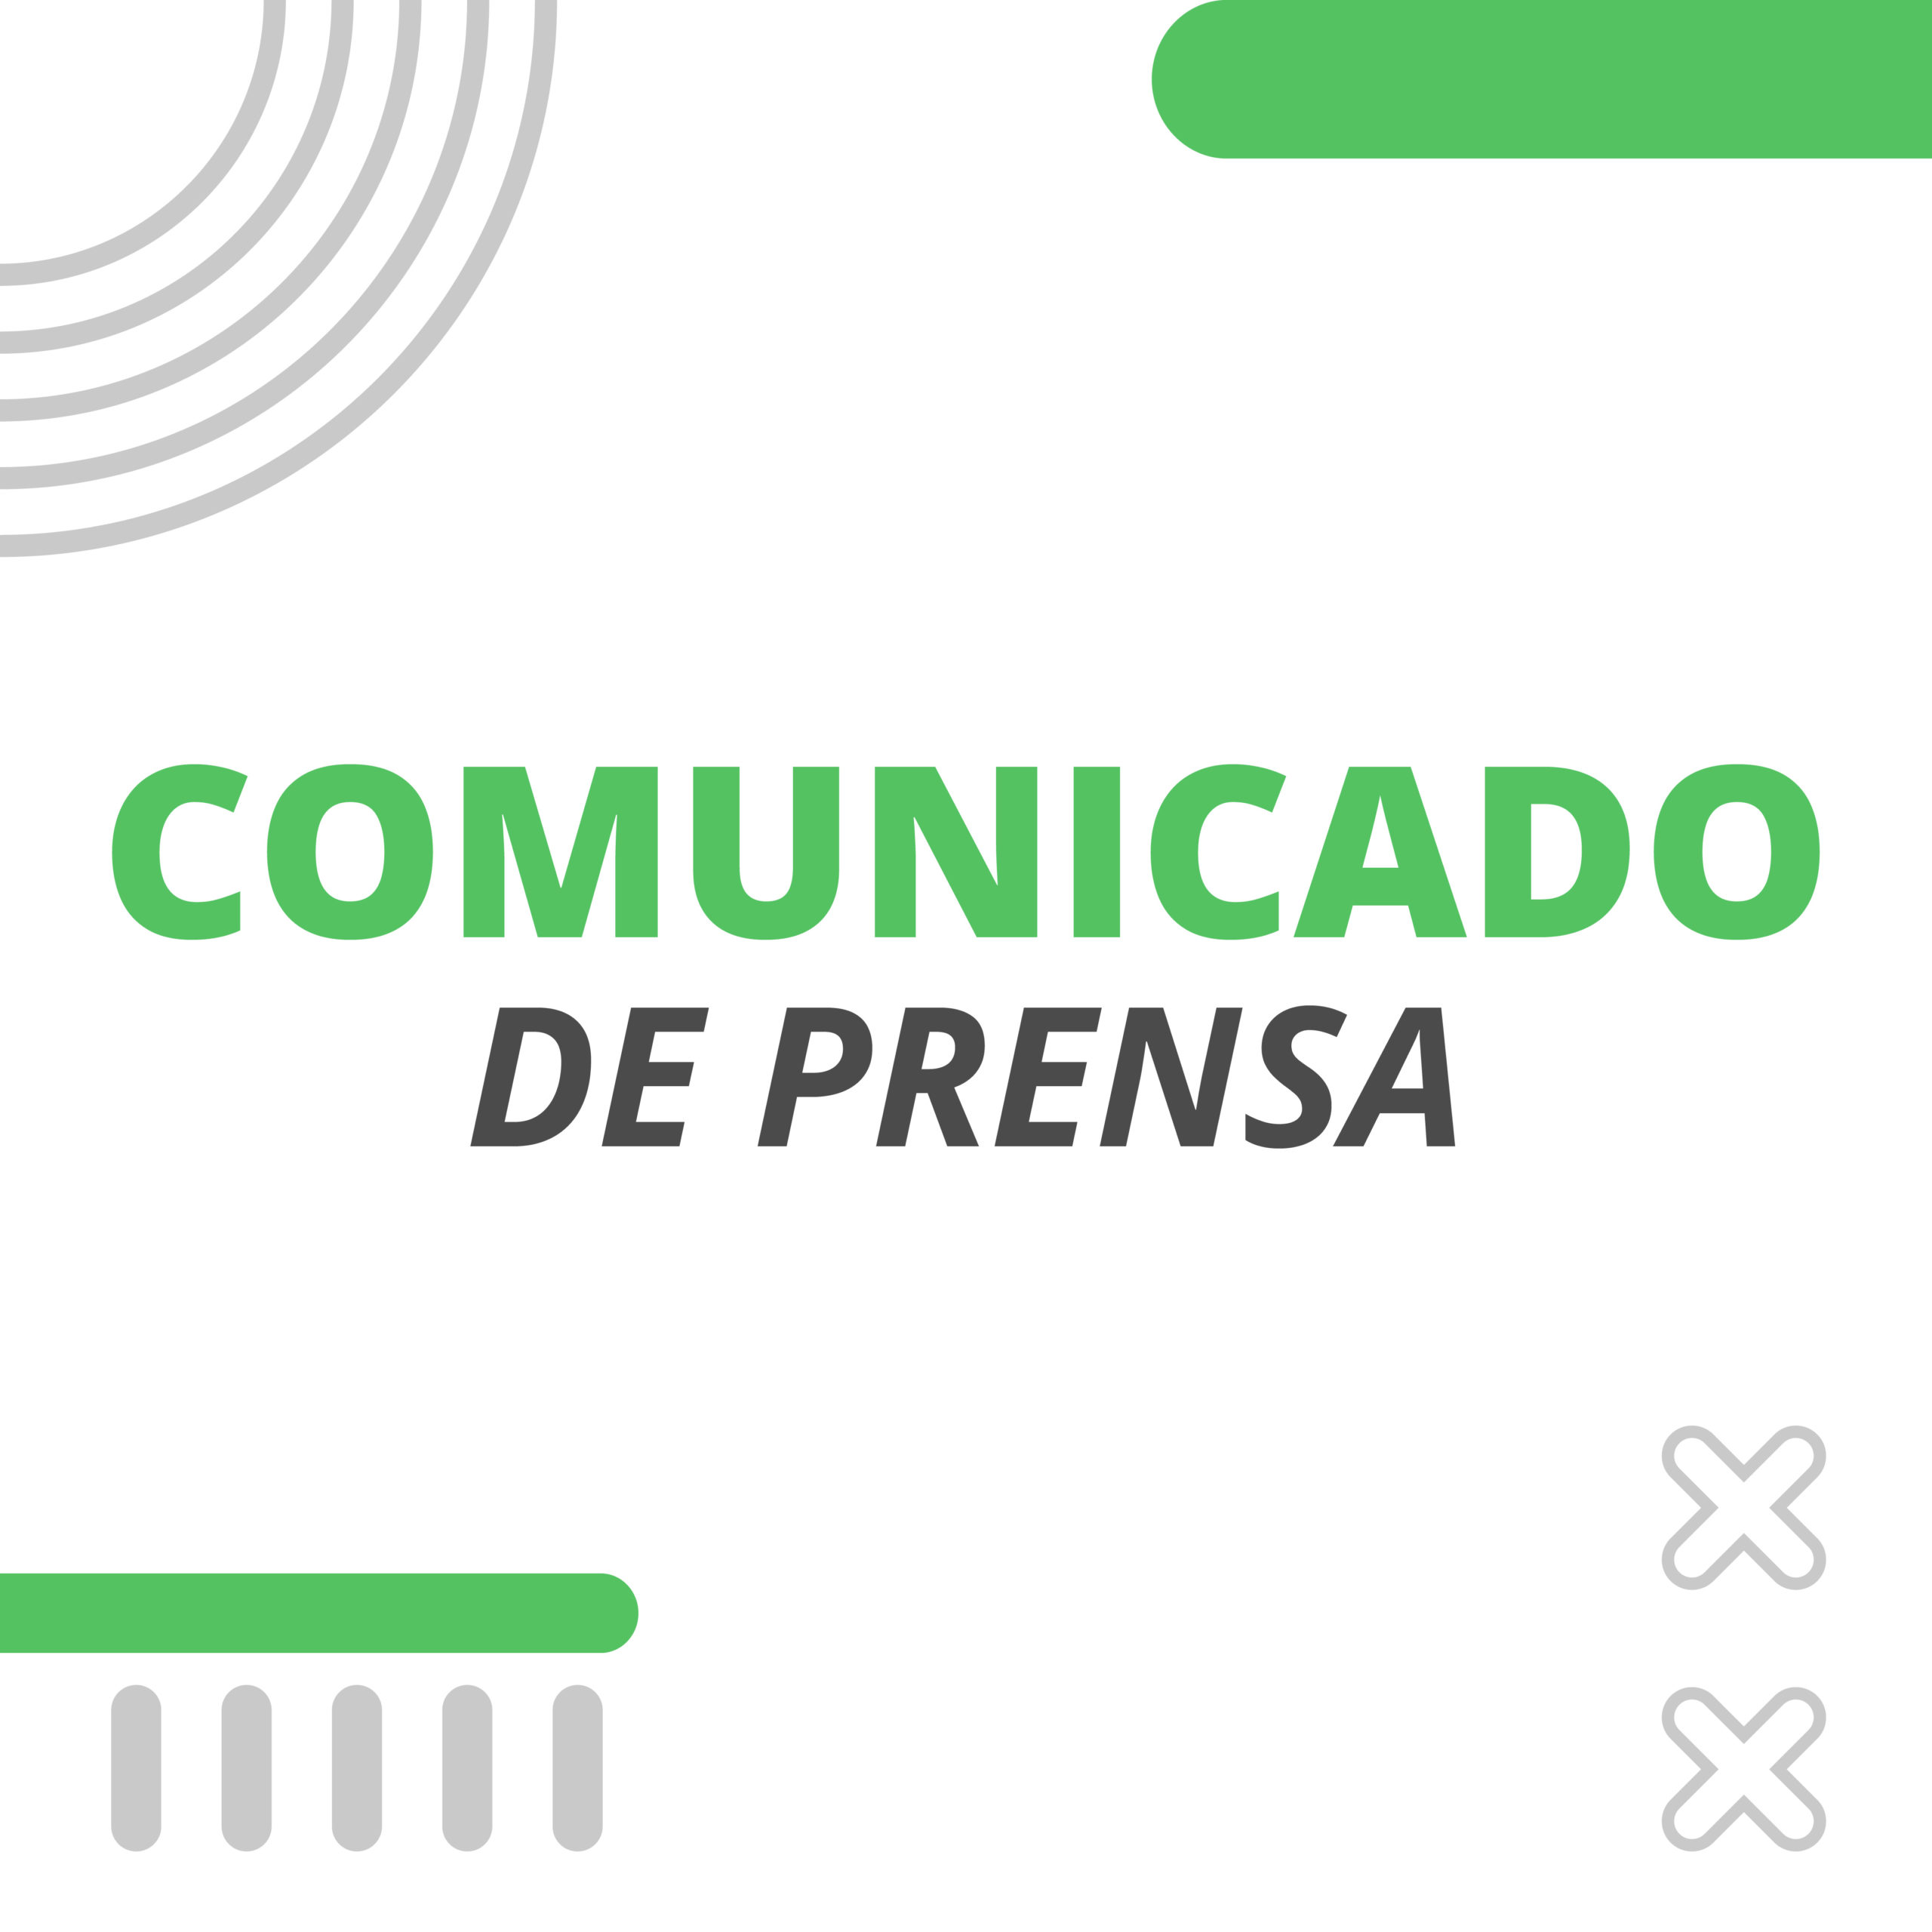 Comunicado de Prensa – Cierre Paritaria Anual 01/04/2021 al 31/03/2022